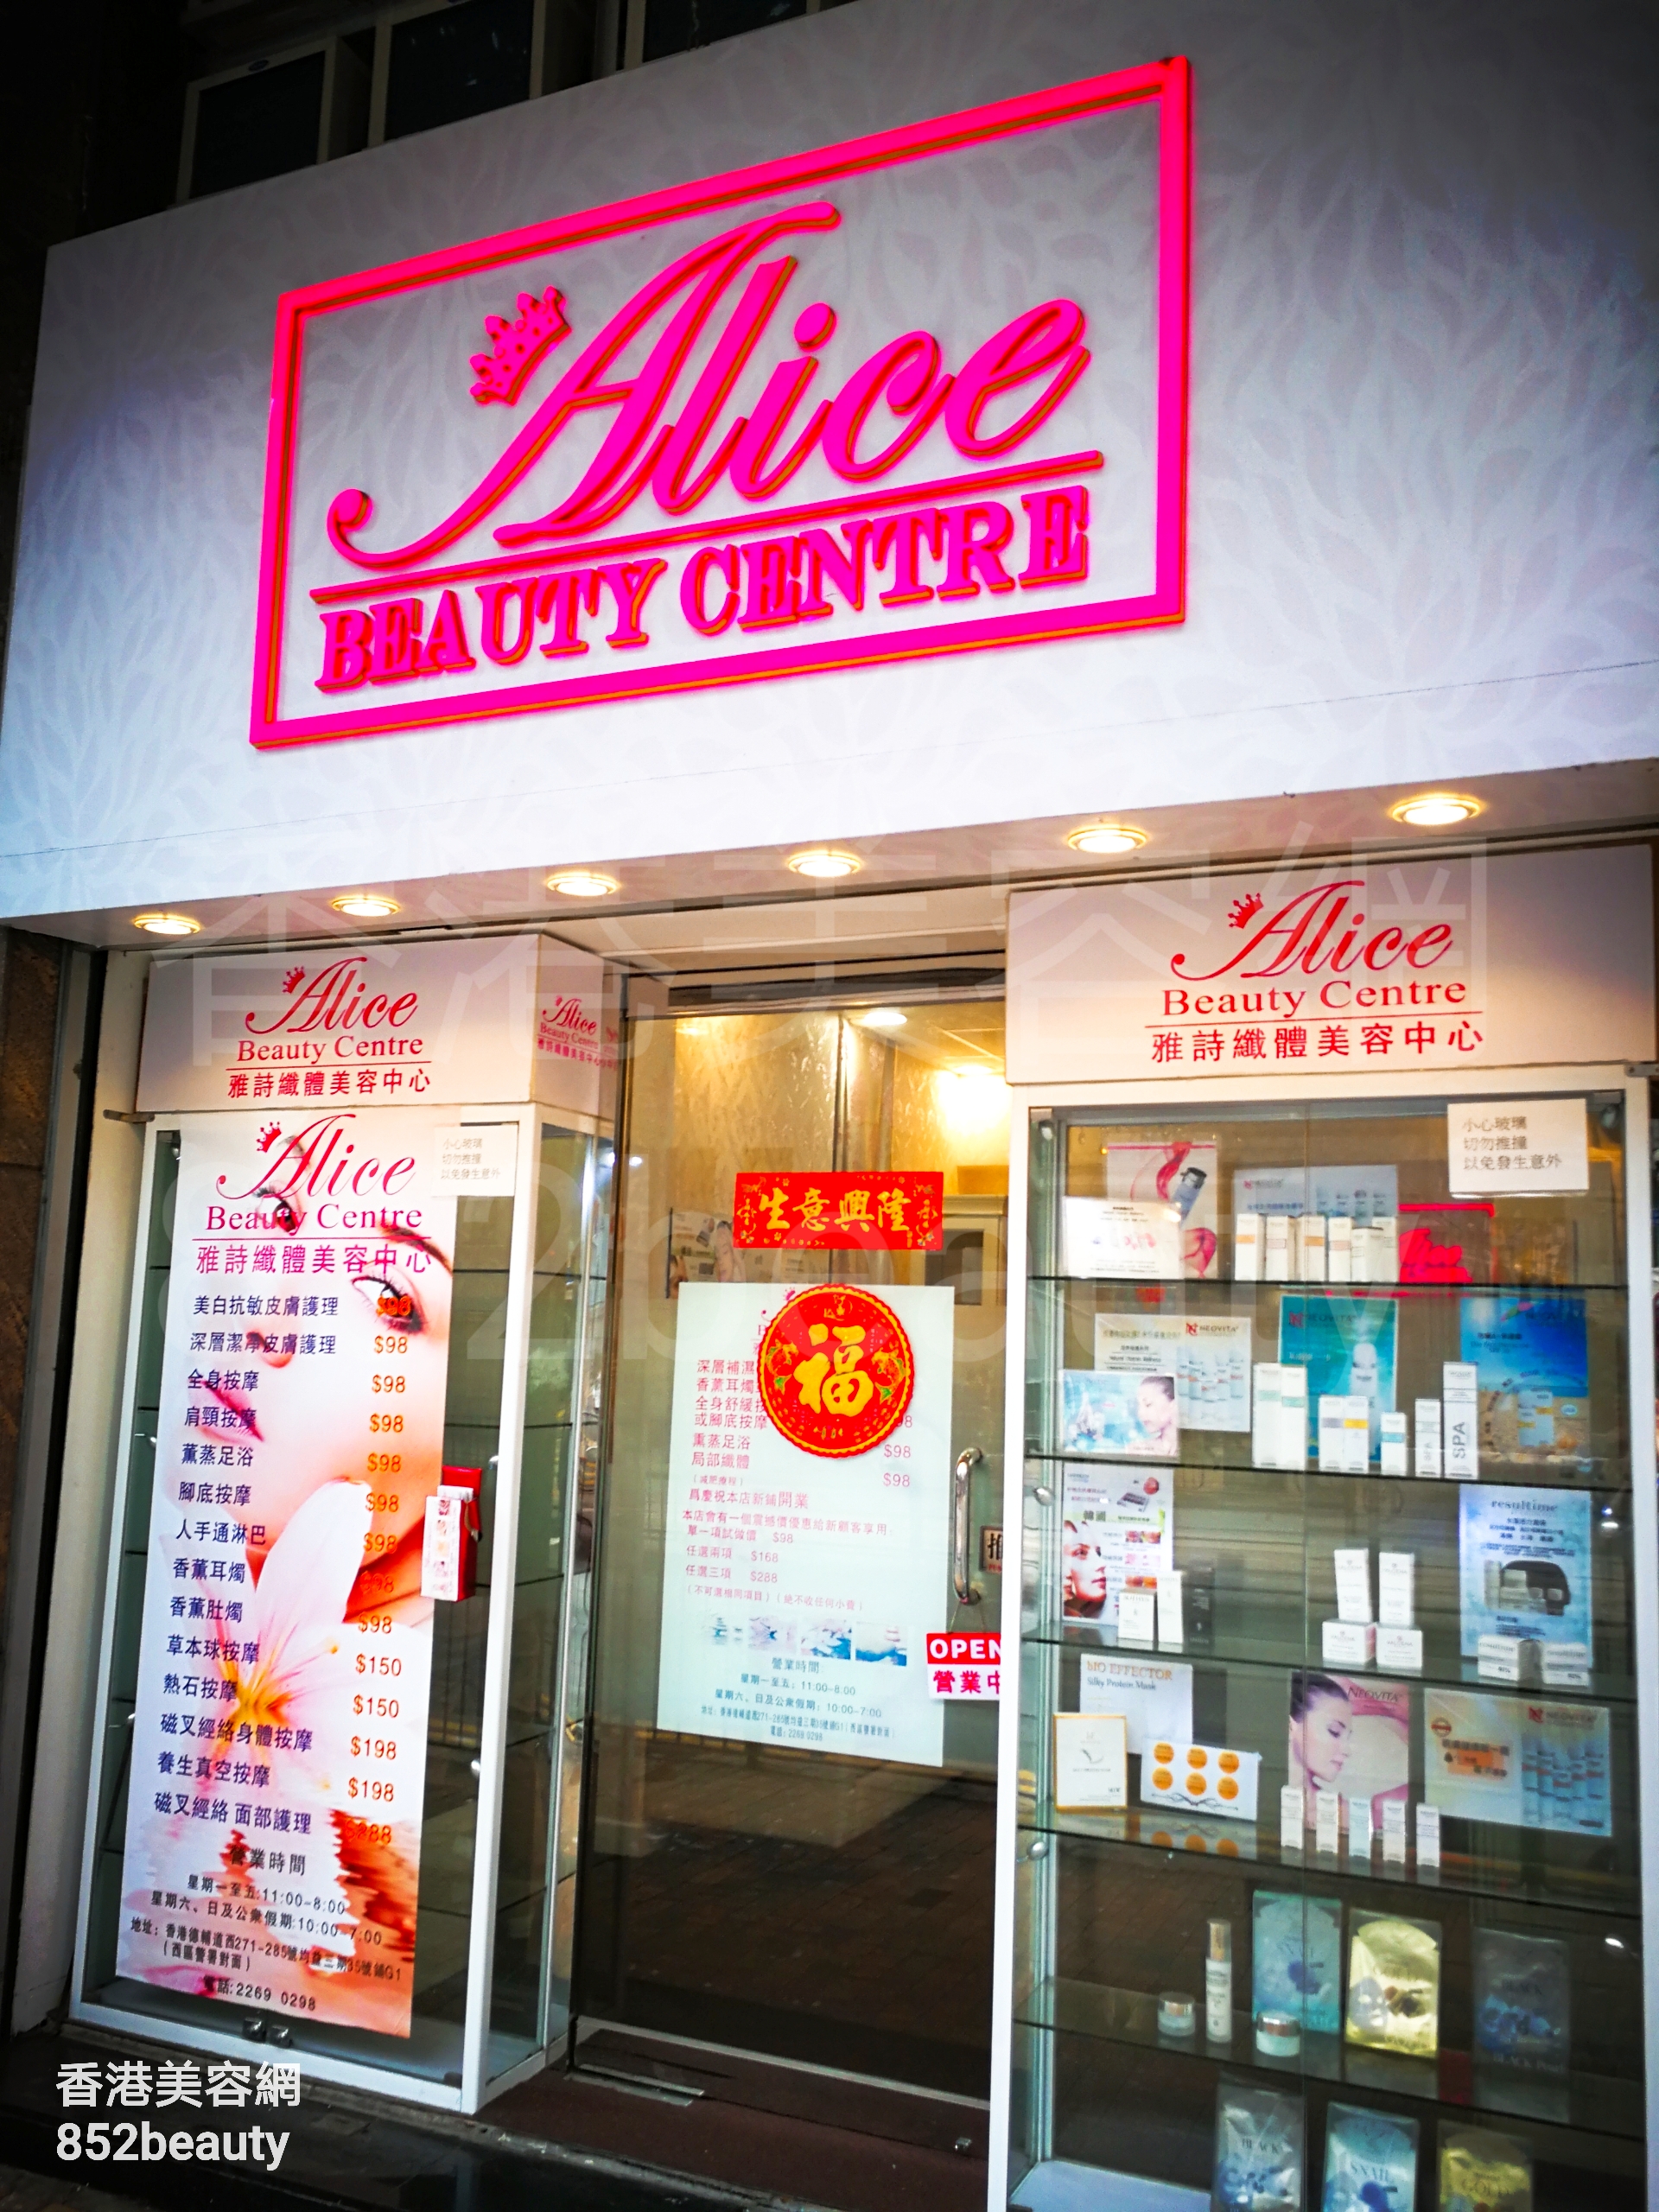 香港美容網 Hong Kong Beauty Salon 美容院 / 美容師: Alice beauty centre 雅詩纖體美容中心 (西營盤店)